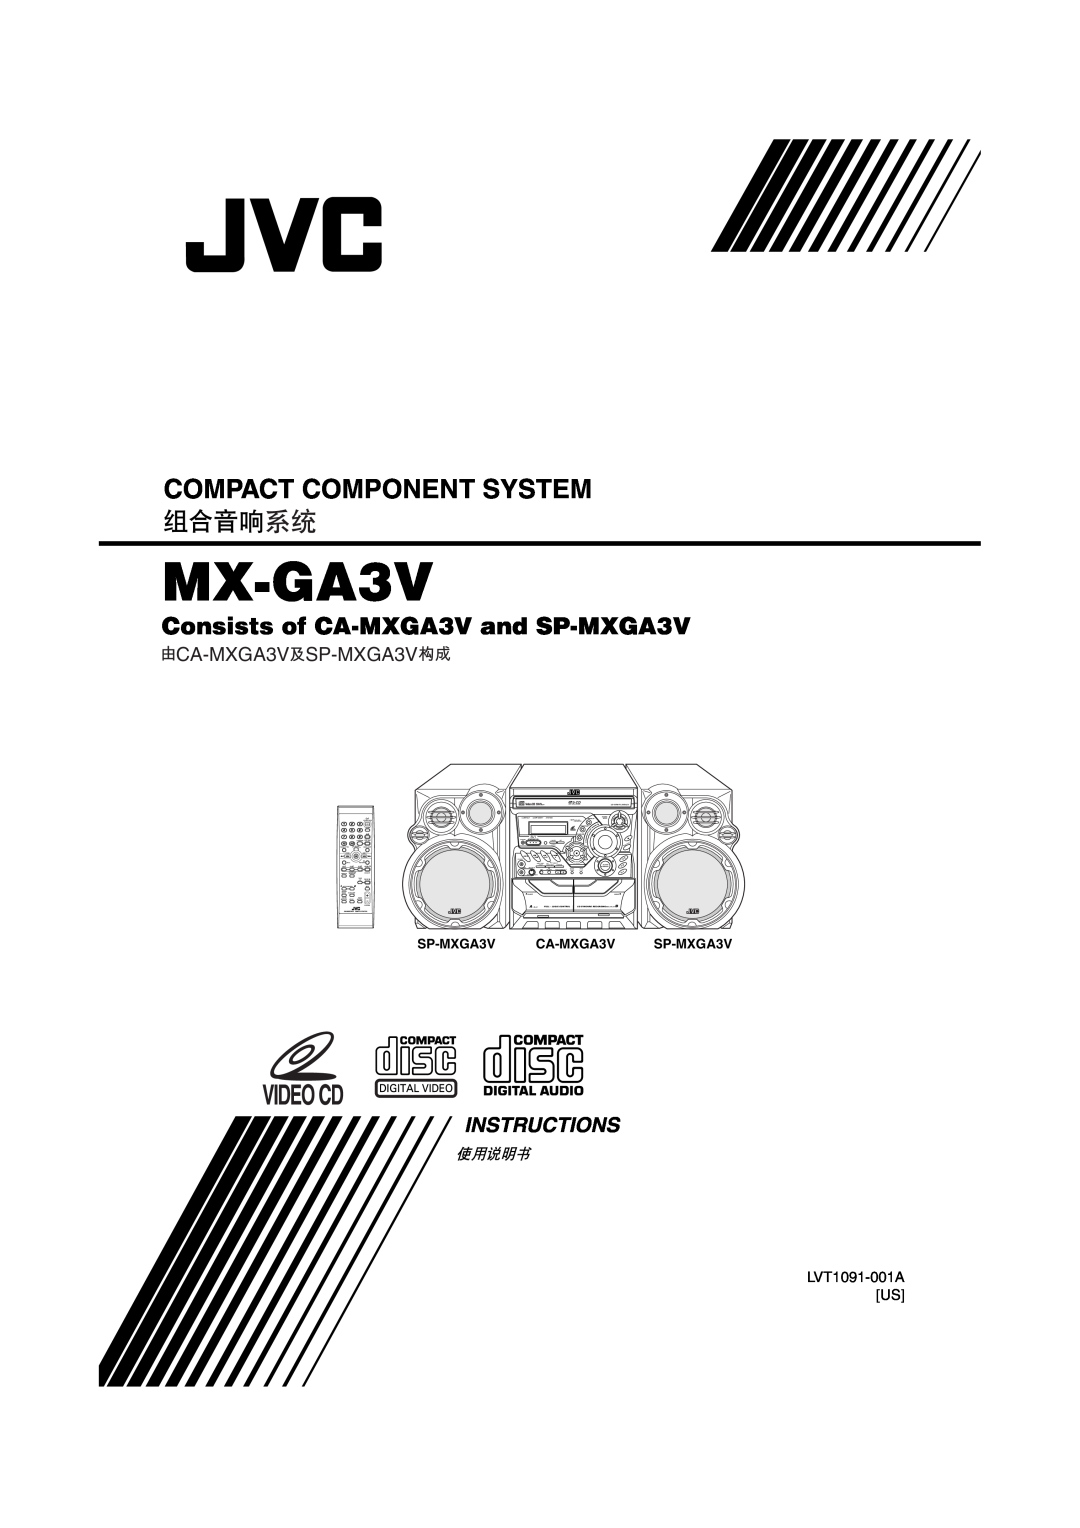 JVC LVT1091-001A manual Instructions, MX-GA3V, Compact Component System, Consists of CA-MXGA3Vand SP-MXGA3V 